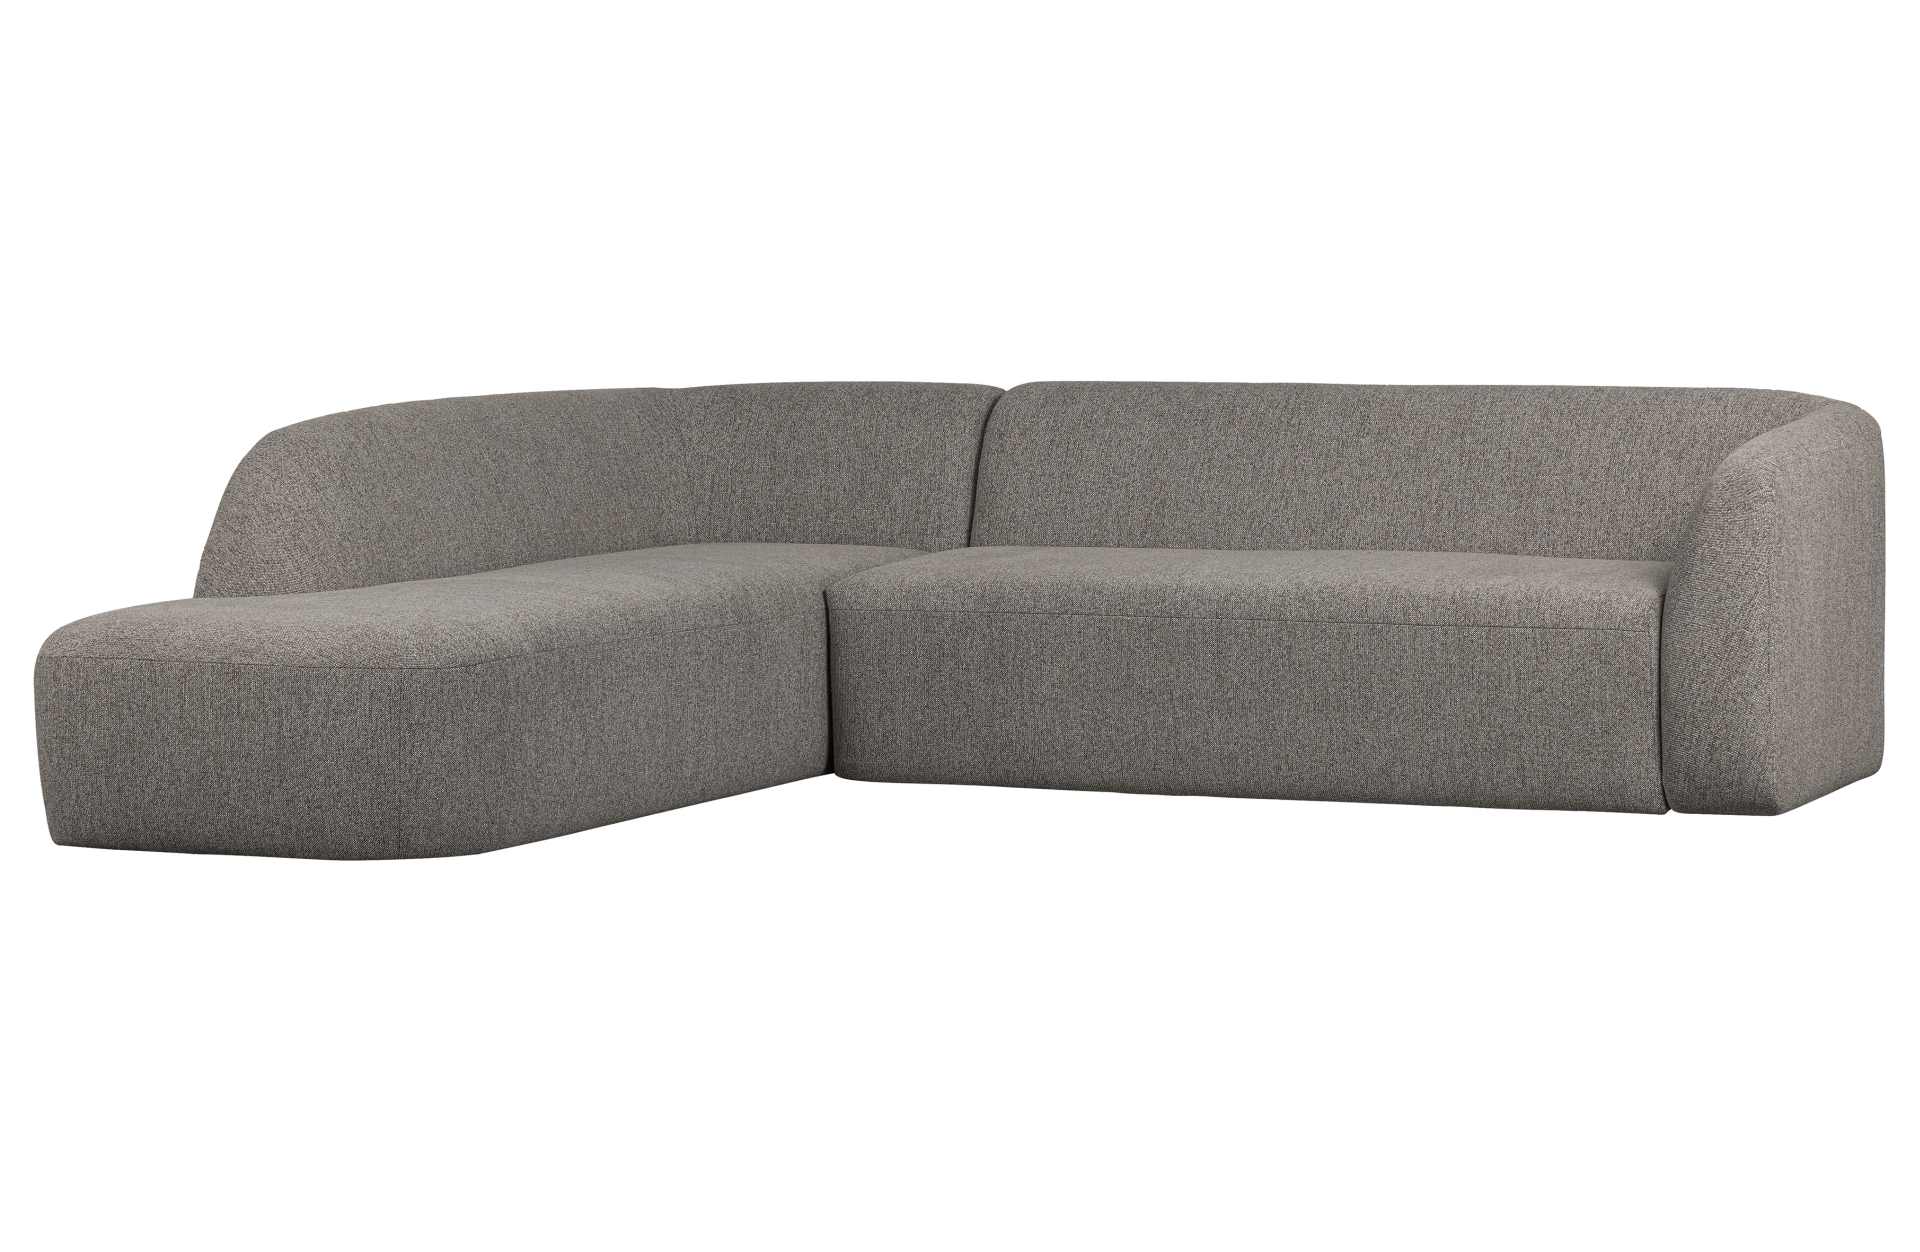 Das Ecksofa Sloping wurde aus bequemen Stoff gefertigt, welcher einen Grauen Farbton besitzt. Das Sofa ist ein echter Hingucker für dein Zuhause, denn es hat ein modernes Design, welches zu jeder Inneneinrichtung passt.